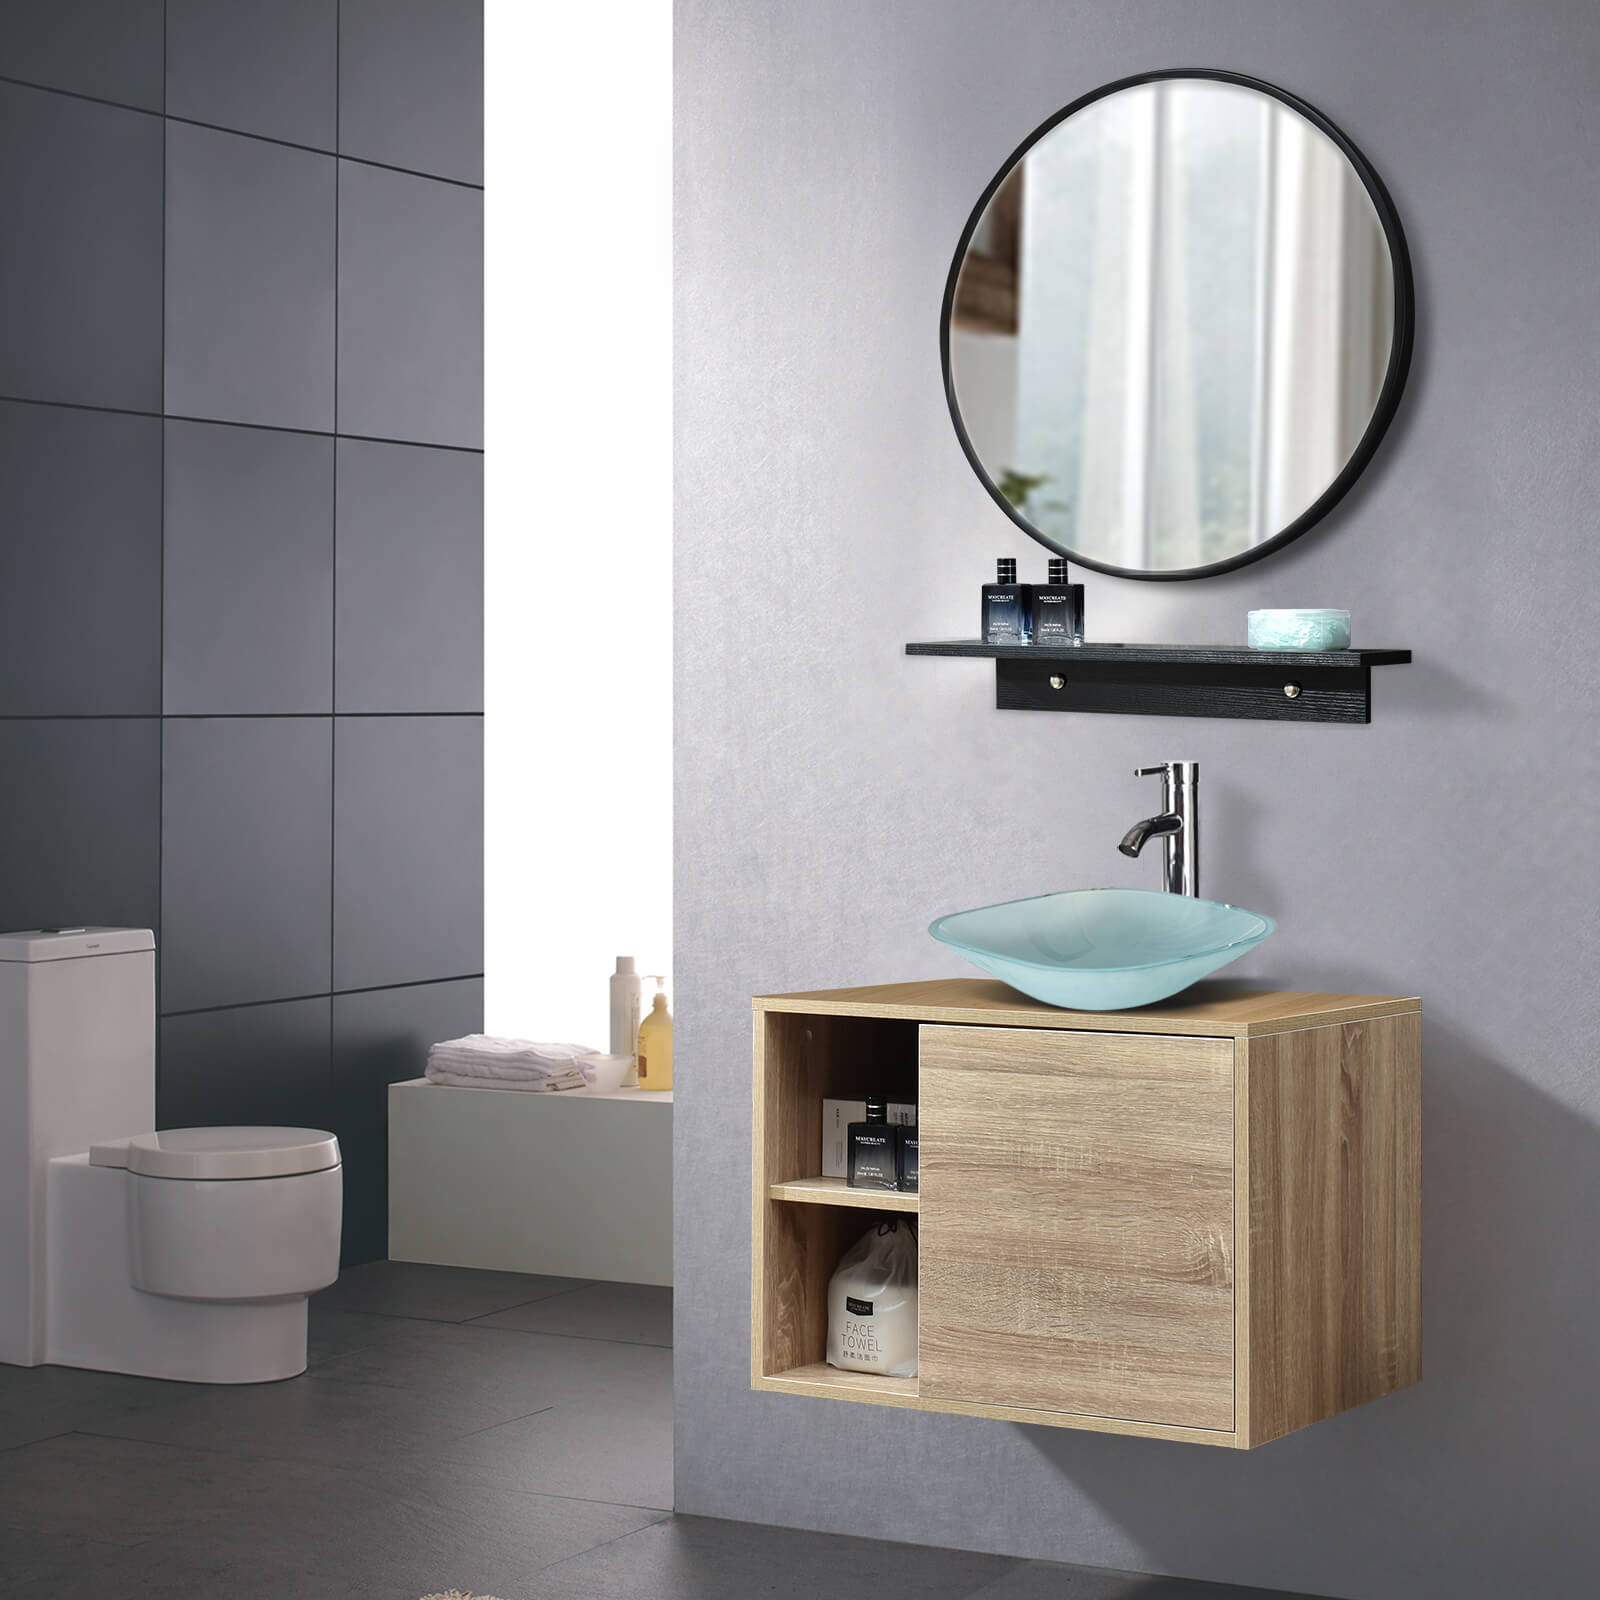 Elecwish Bathroom Vanity Wall Mounted Cabinet Glass Sink Mirror Combo